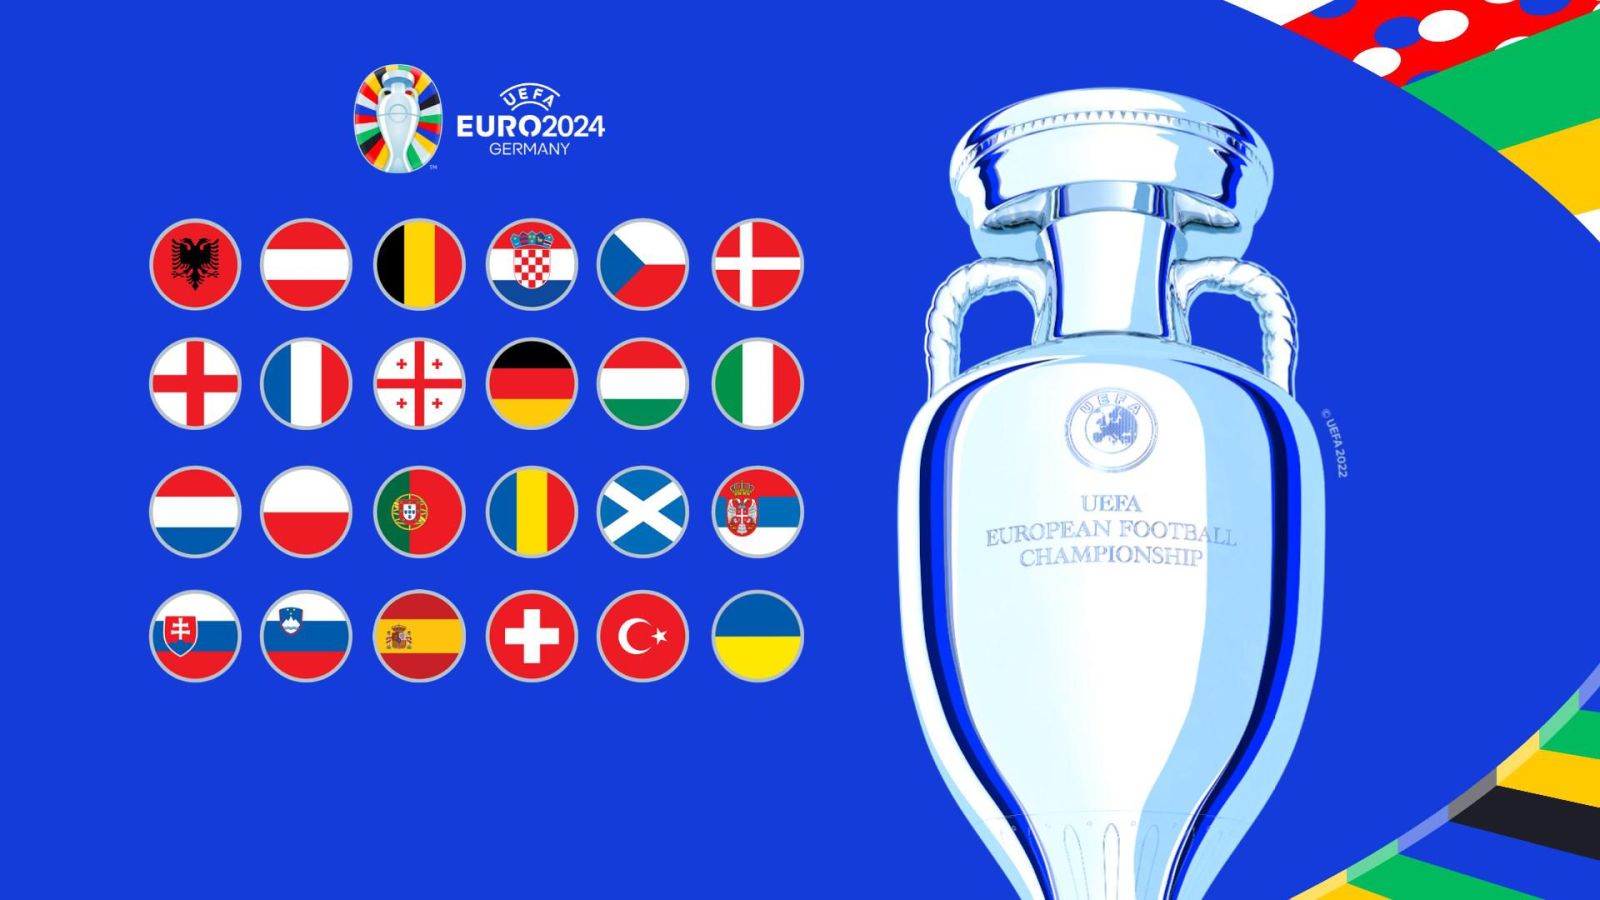 Pronostic Euro 2024 : Cotes, favoris pour vos paris sportifs | 100€ offerts pour parier